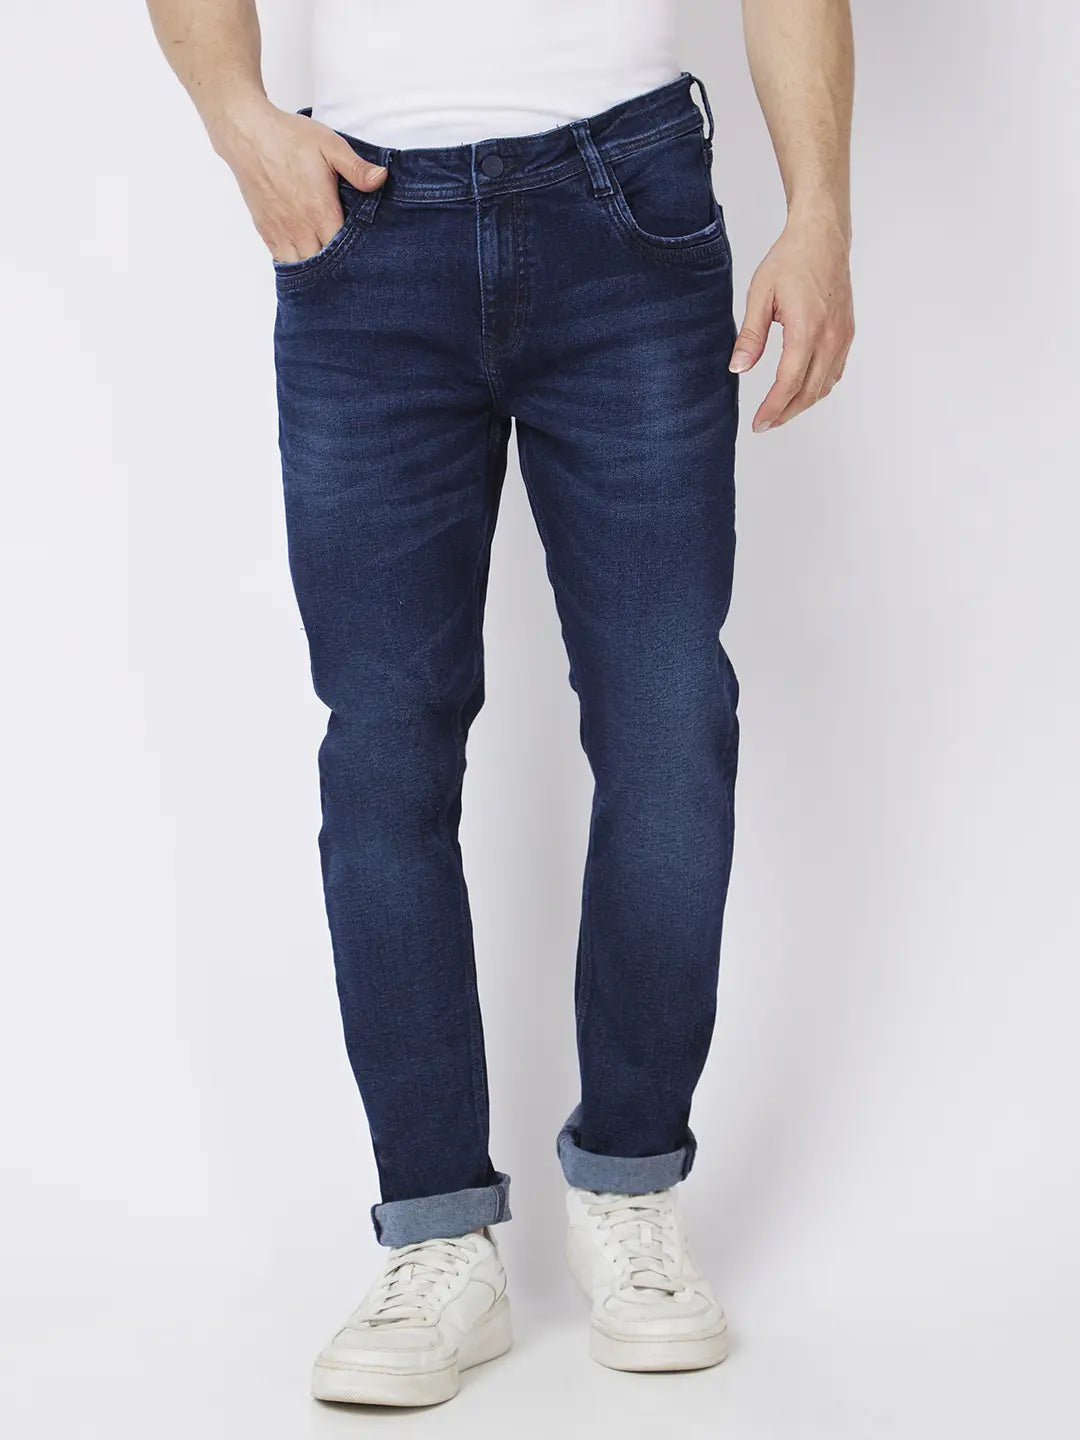 Estrolo | Buy Dark Blue Denim Jeans For Men | Stretchable Slim Fit